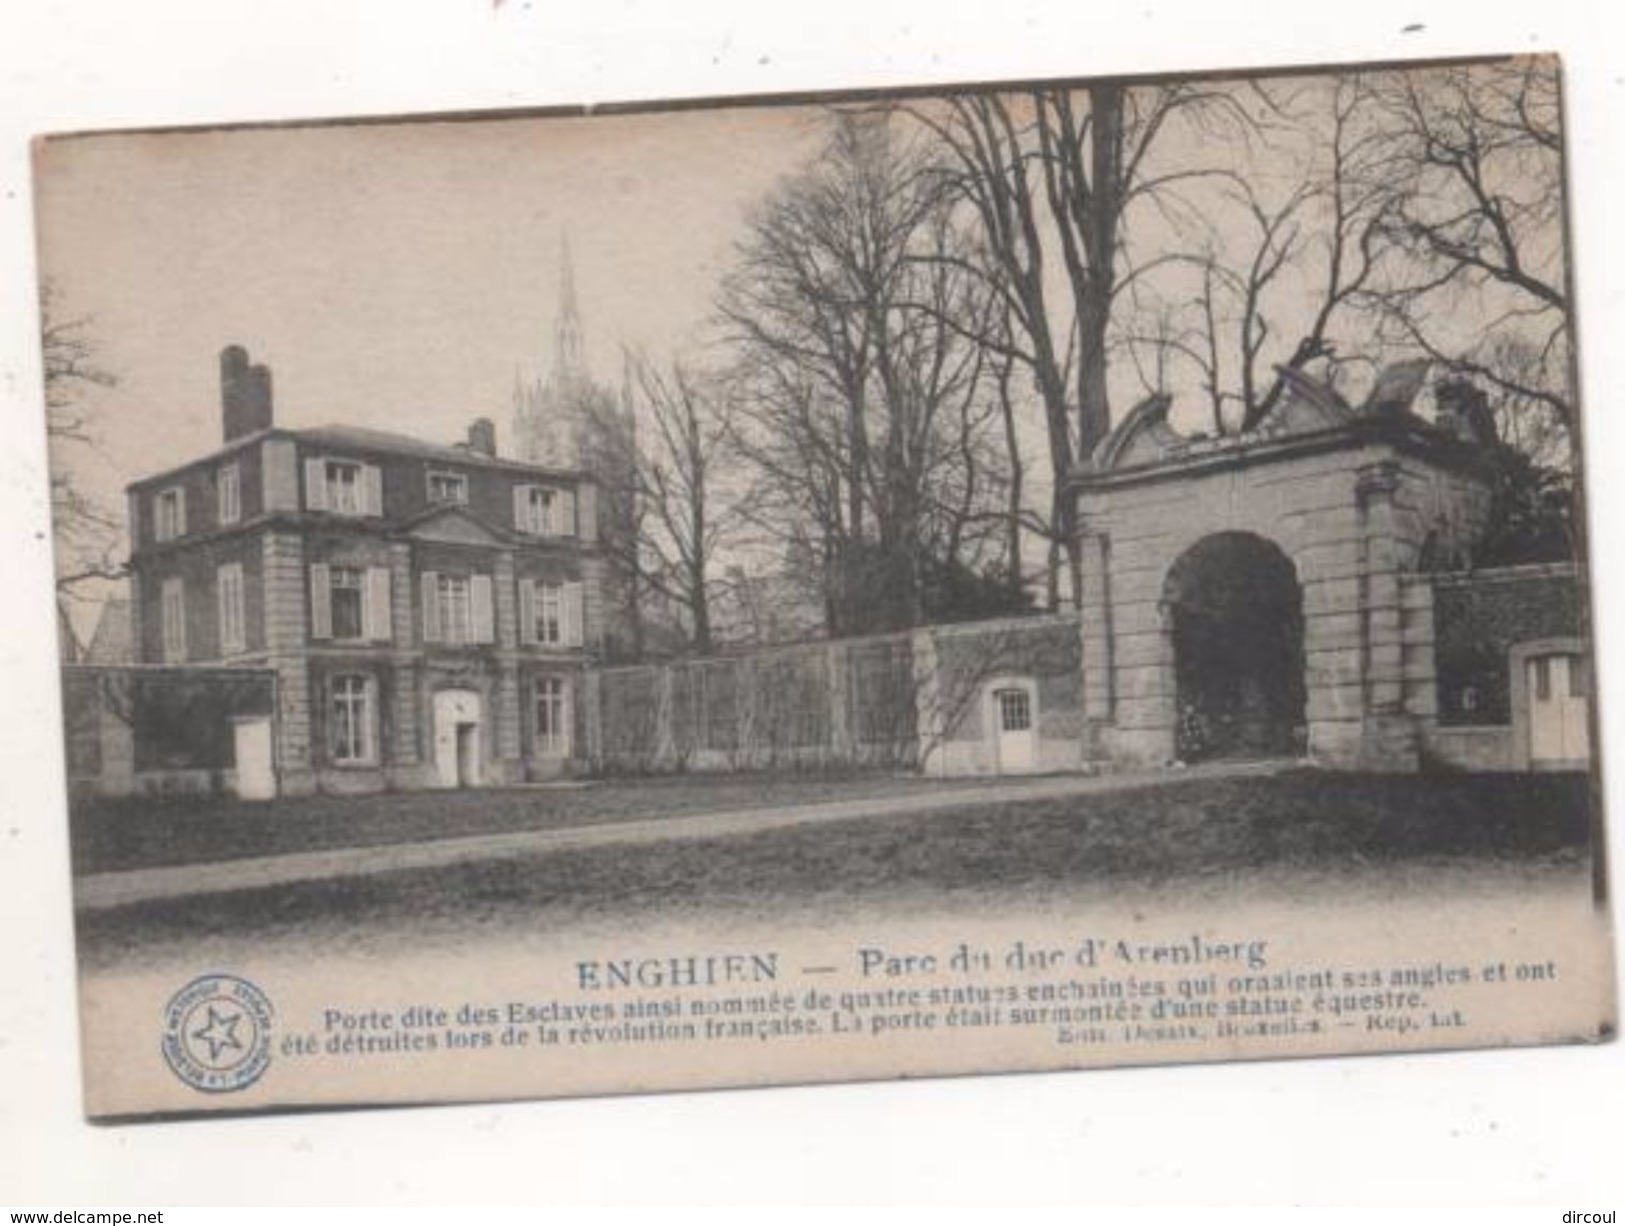 36833  -  Enghien   Parc Du Duc D'  Arenberg -  Porte Dit  Des Esclaves - Enghien - Edingen